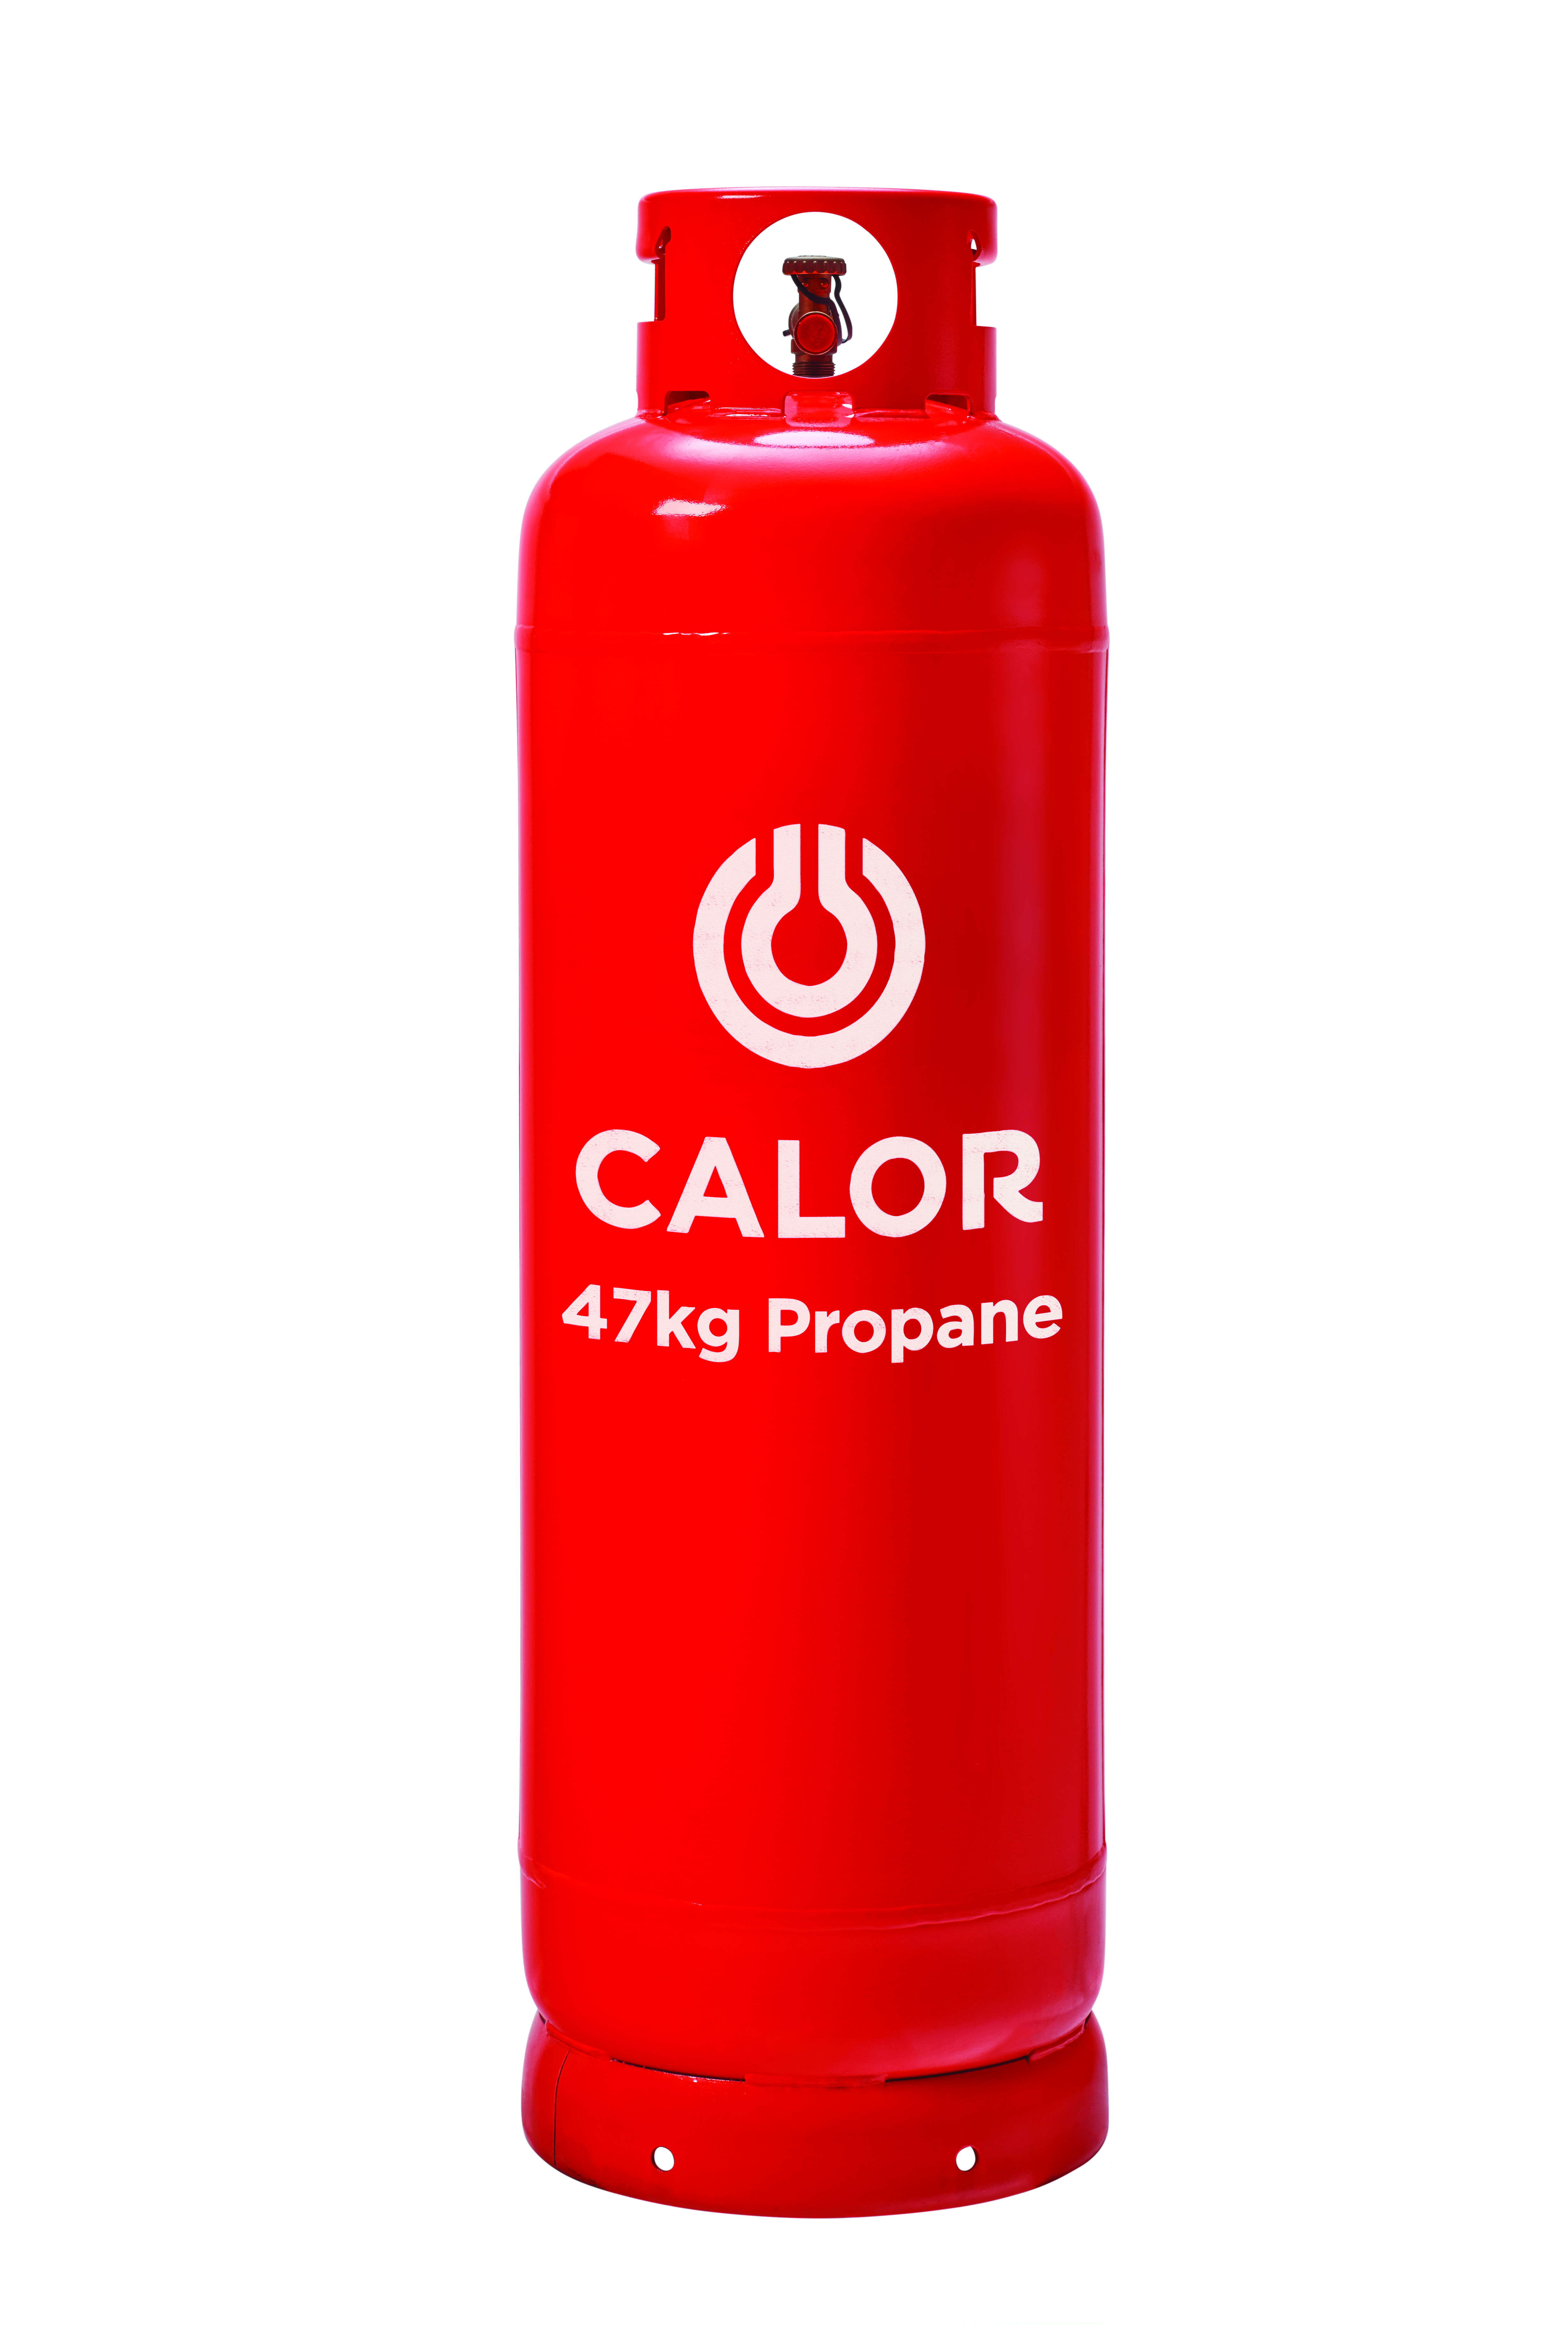 47kg Propane Calor Gas Bottle Main Suppliers